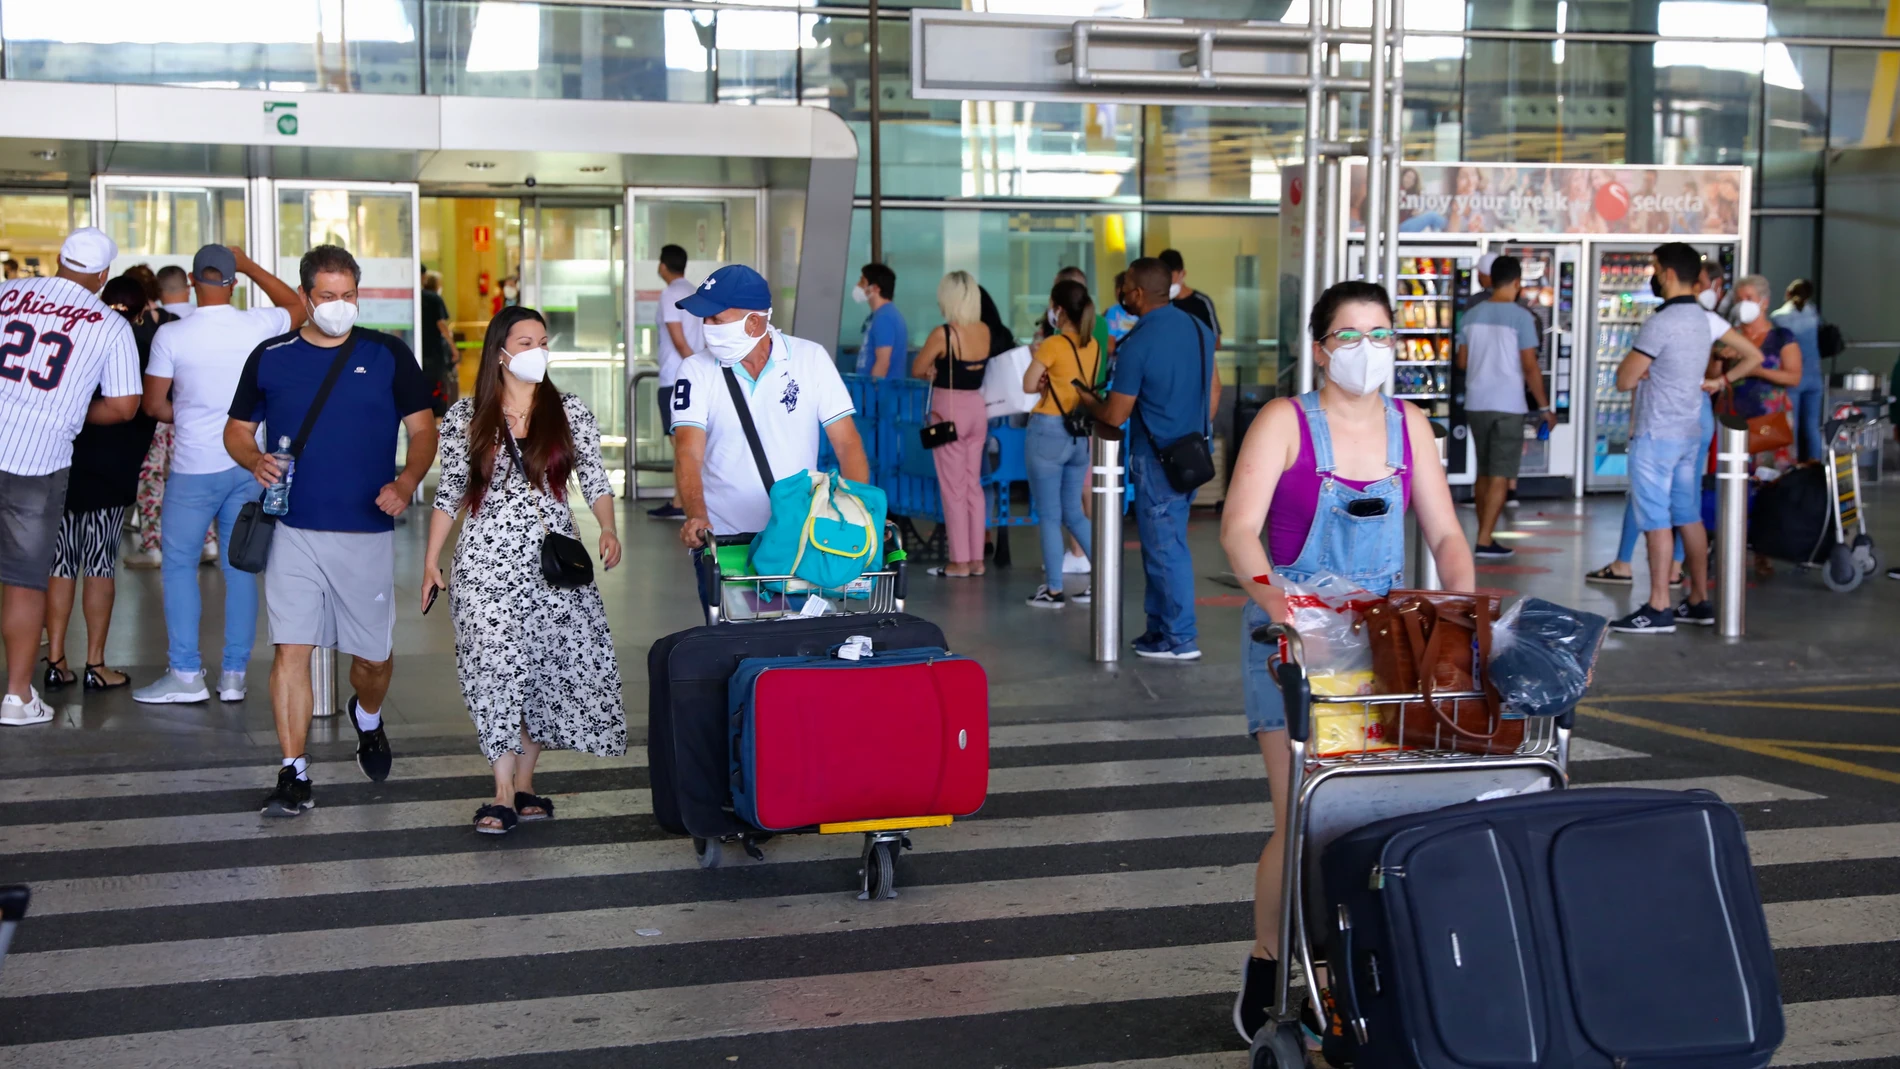 Viajeros que llegan al aeropuerto de Barajas, previa presentación de una prueba Covid negativa. Terminal 4.